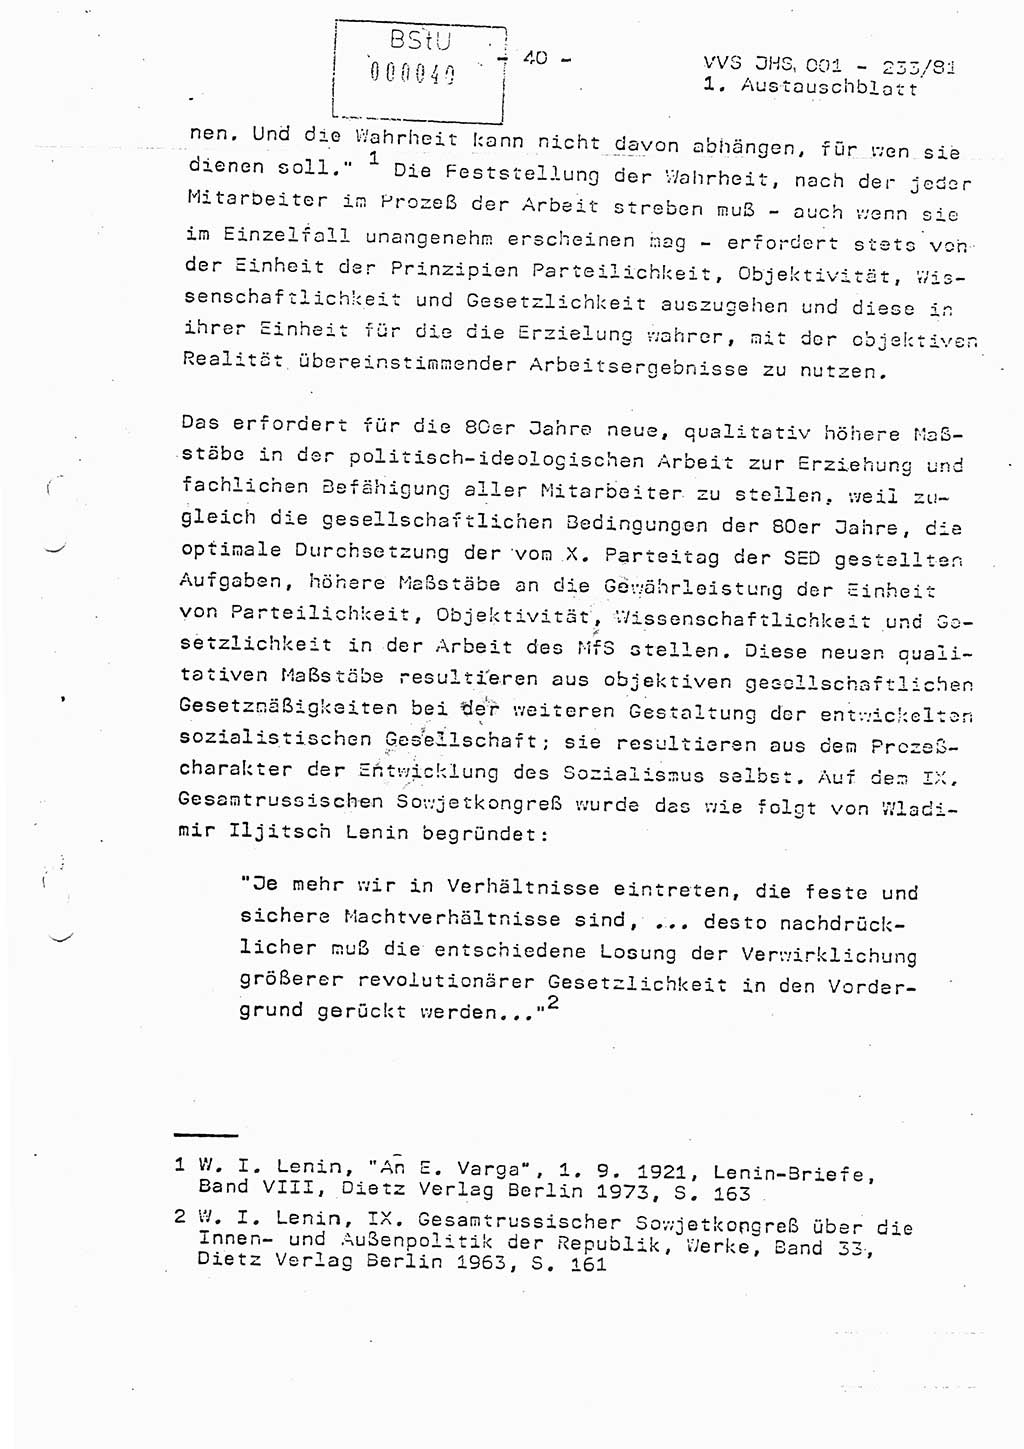 Dissertation Oberstleutnant Horst Zank (JHS), Oberstleutnant Dr. Karl-Heinz Knoblauch (JHS), Oberstleutnant Gustav-Adolf Kowalewski (HA Ⅸ), Oberstleutnant Wolfgang Plötner (HA Ⅸ), Ministerium für Staatssicherheit (MfS) [Deutsche Demokratische Republik (DDR)], Juristische Hochschule (JHS), Vertrauliche Verschlußsache (VVS) o001-233/81, Potsdam 1981, Blatt 40 (Diss. MfS DDR JHS VVS o001-233/81 1981, Bl. 40)